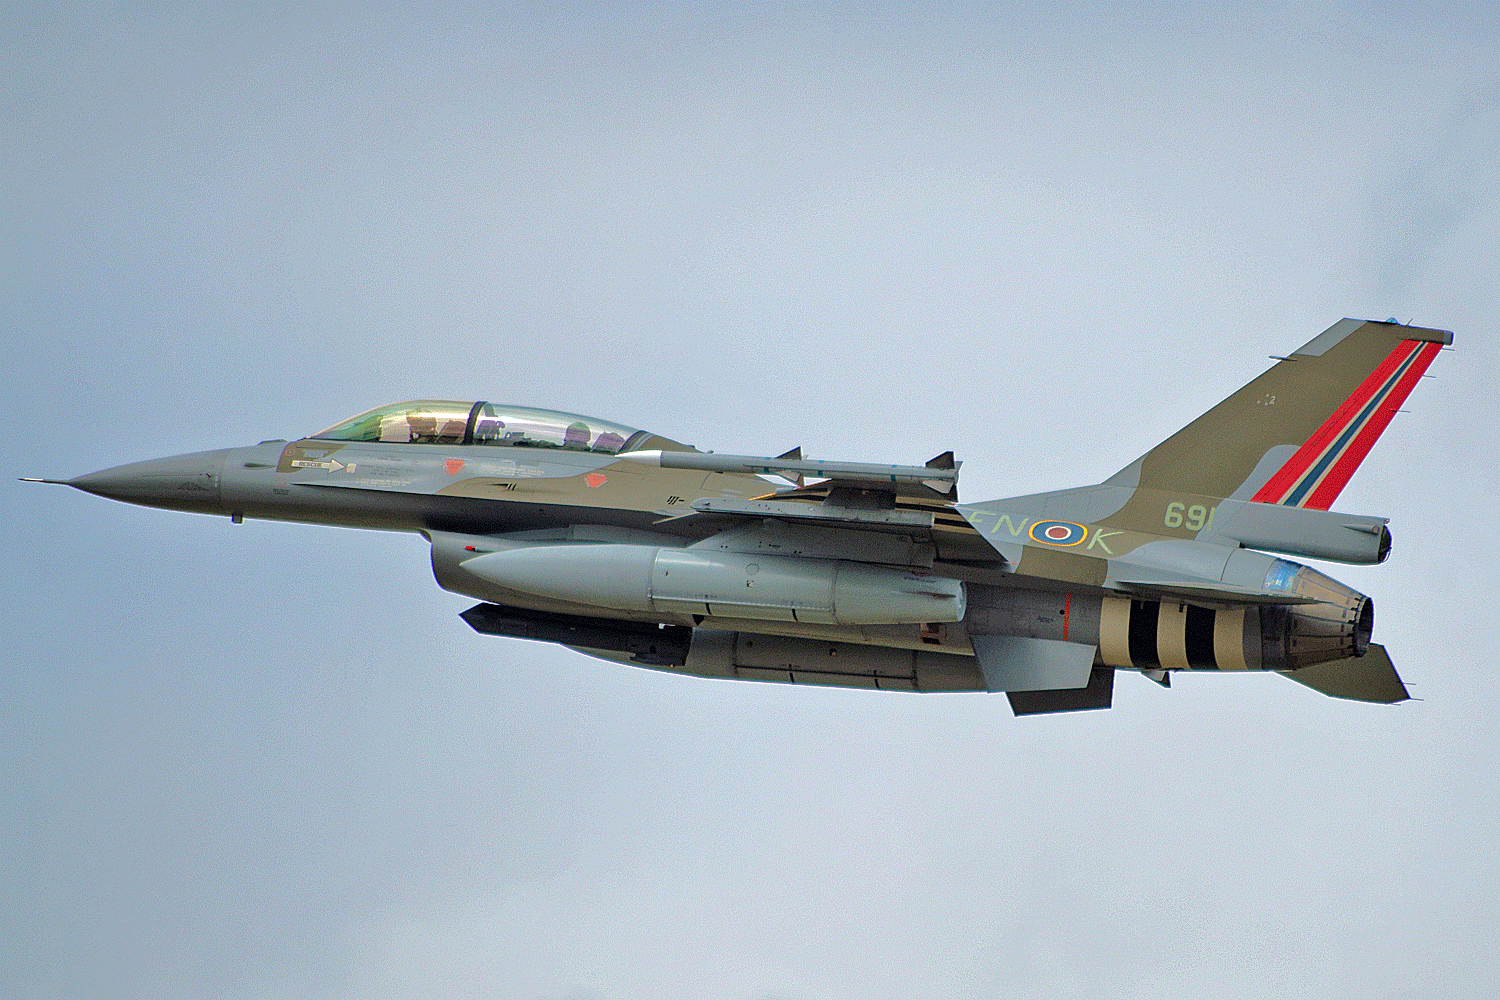 691 F-16BM /FN-K 331 Skv Norway